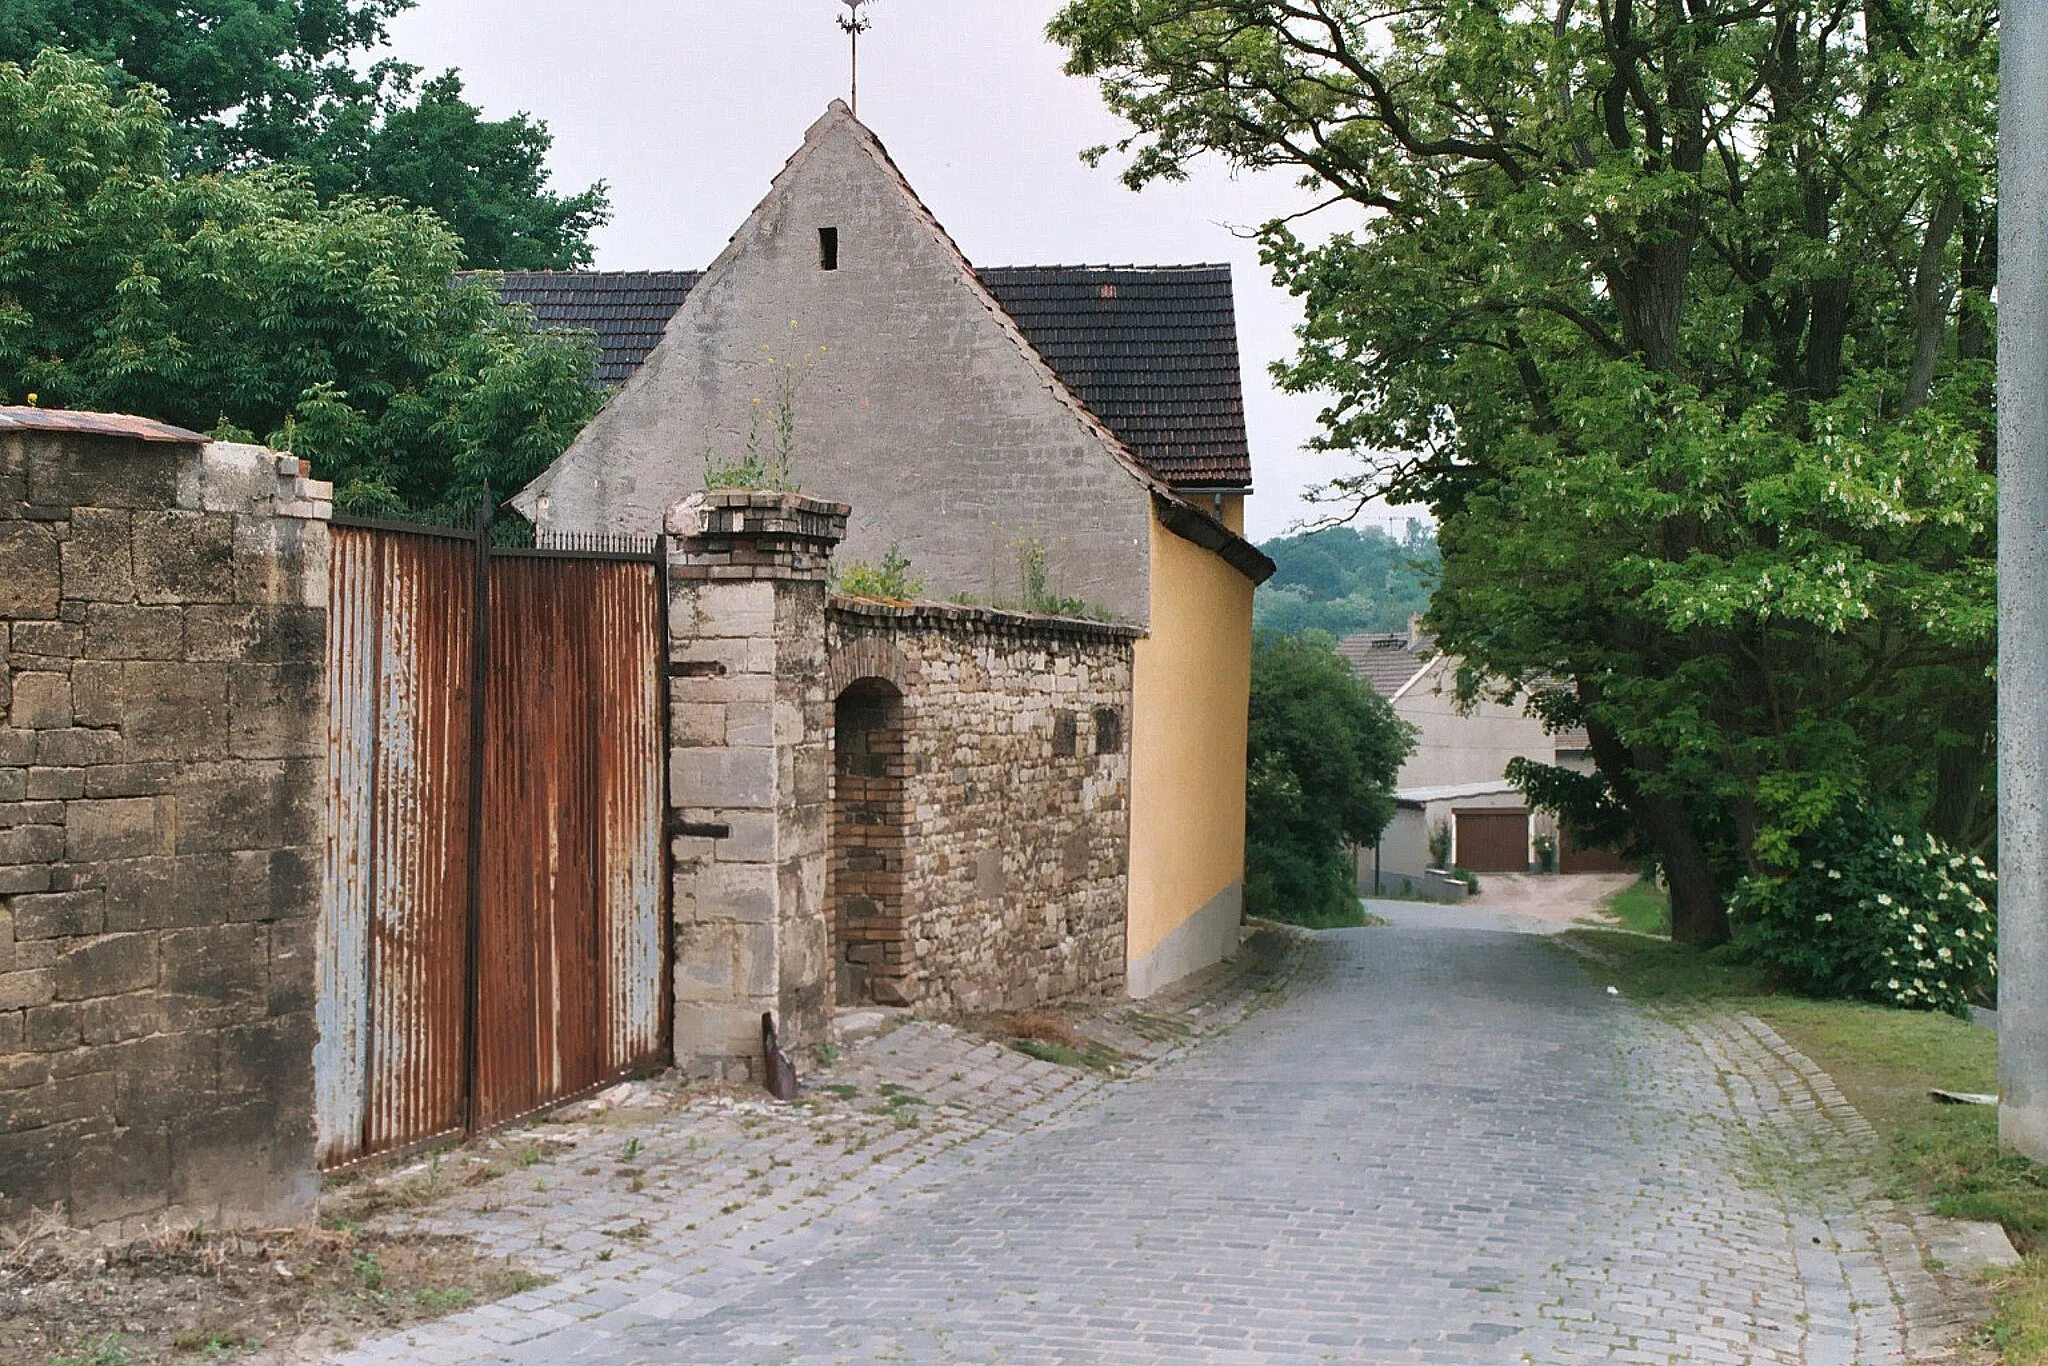 Photo showing: Elbitz (Seegebiet Mansfelder Land), villagescape